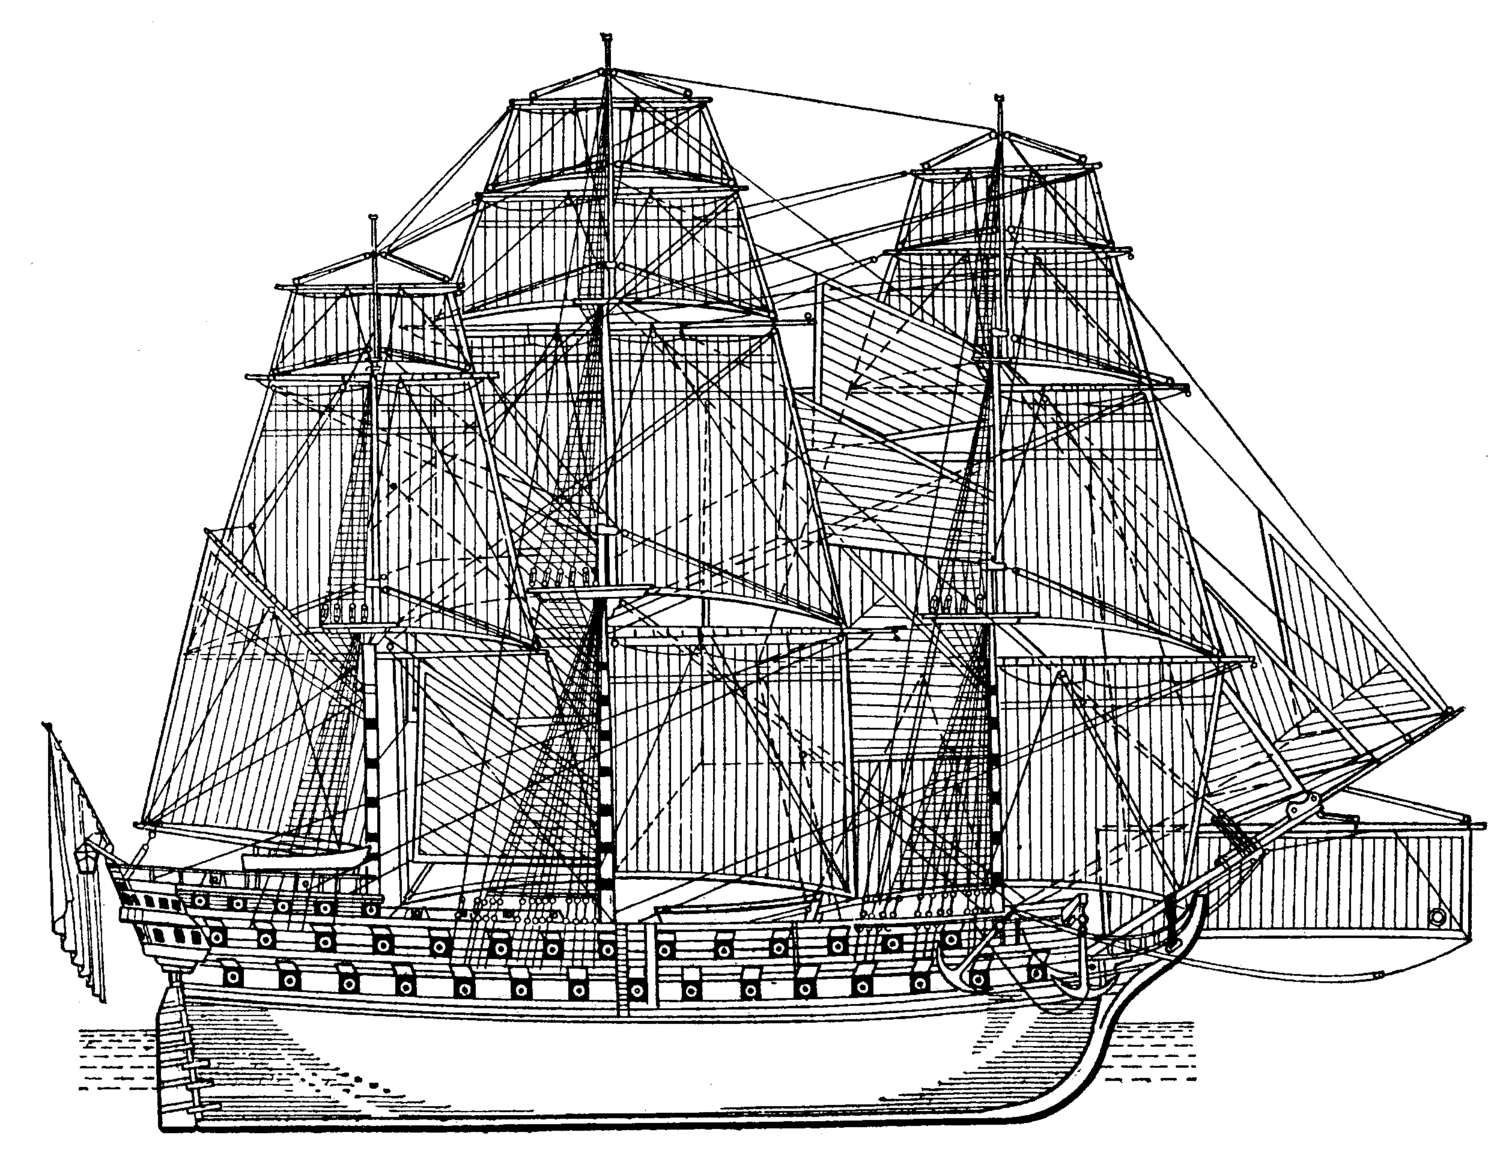 Святой Павел, линейный корабль, 1794